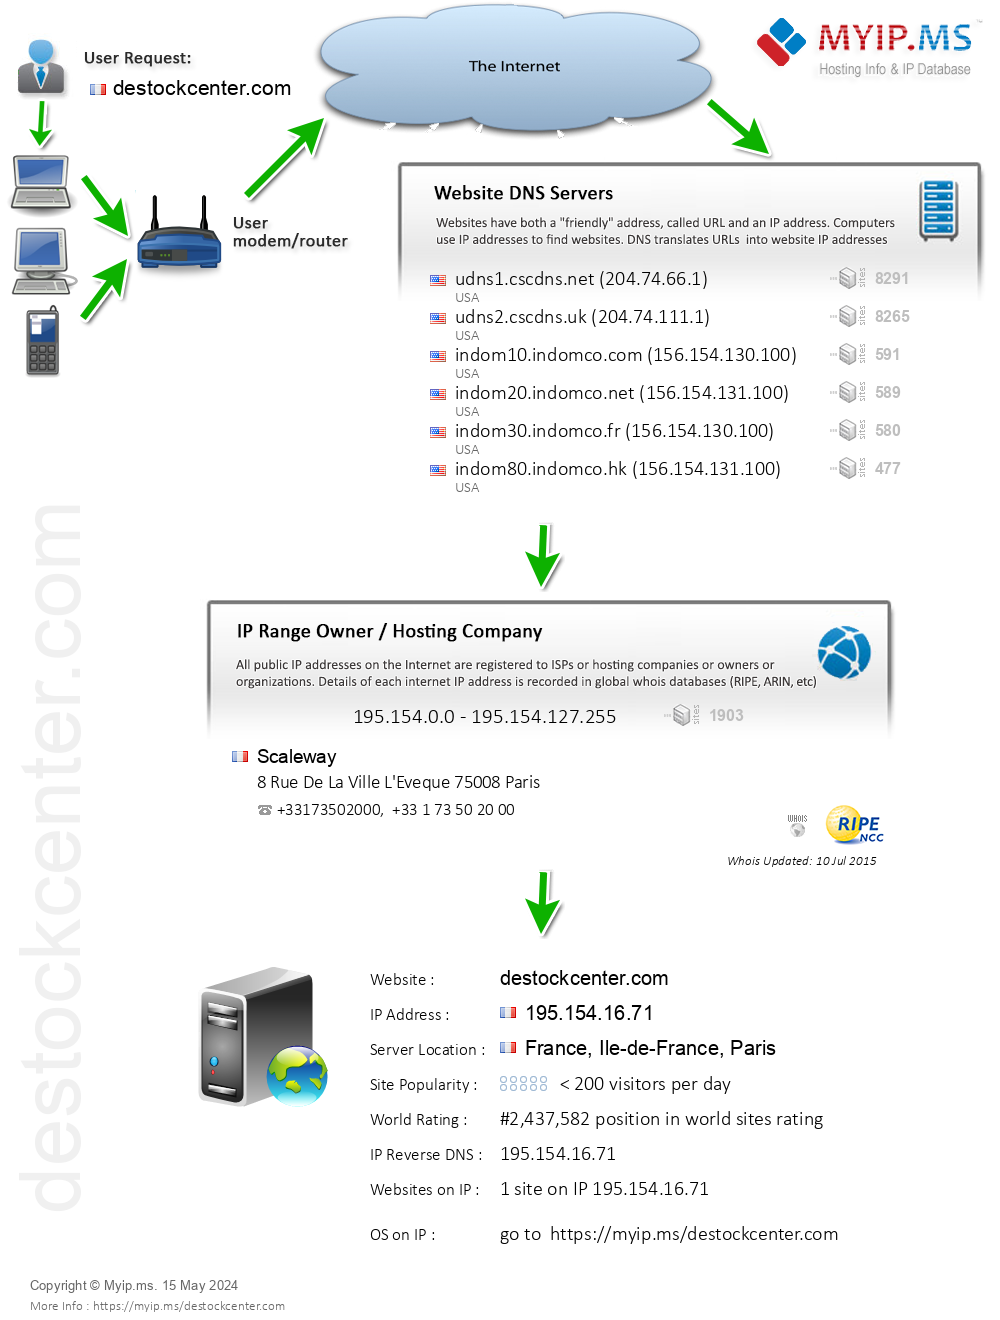 Destockcenter.com - Website Hosting Visual IP Diagram